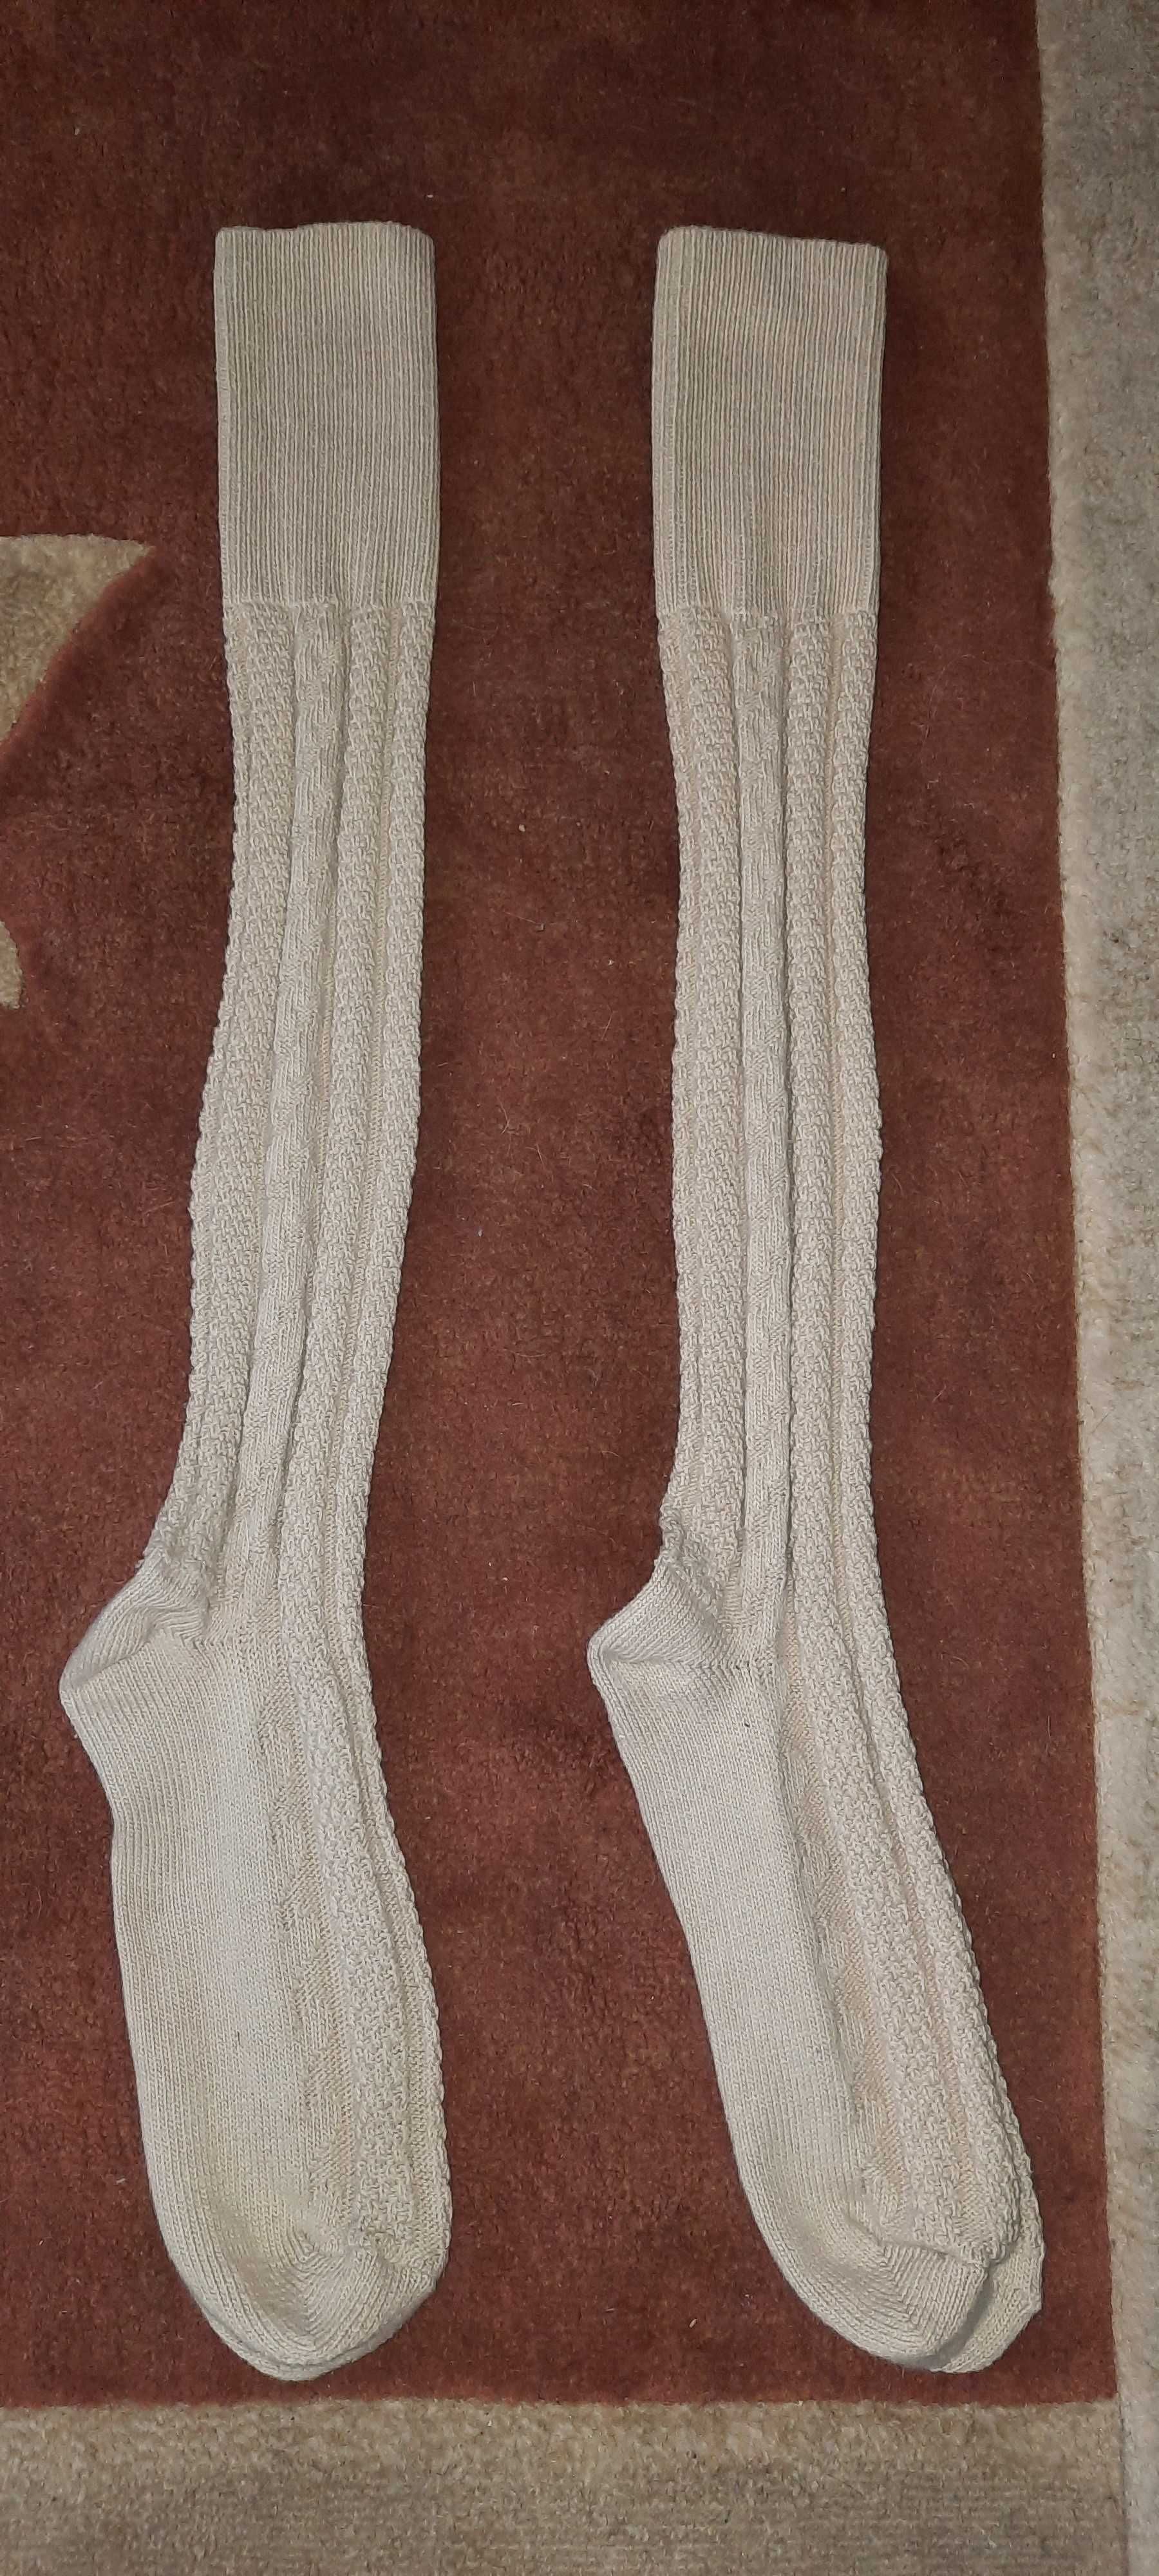 Tradycyjne spodnie tyrolskie ze skóry + skarpety + buty (zestaw nowy).